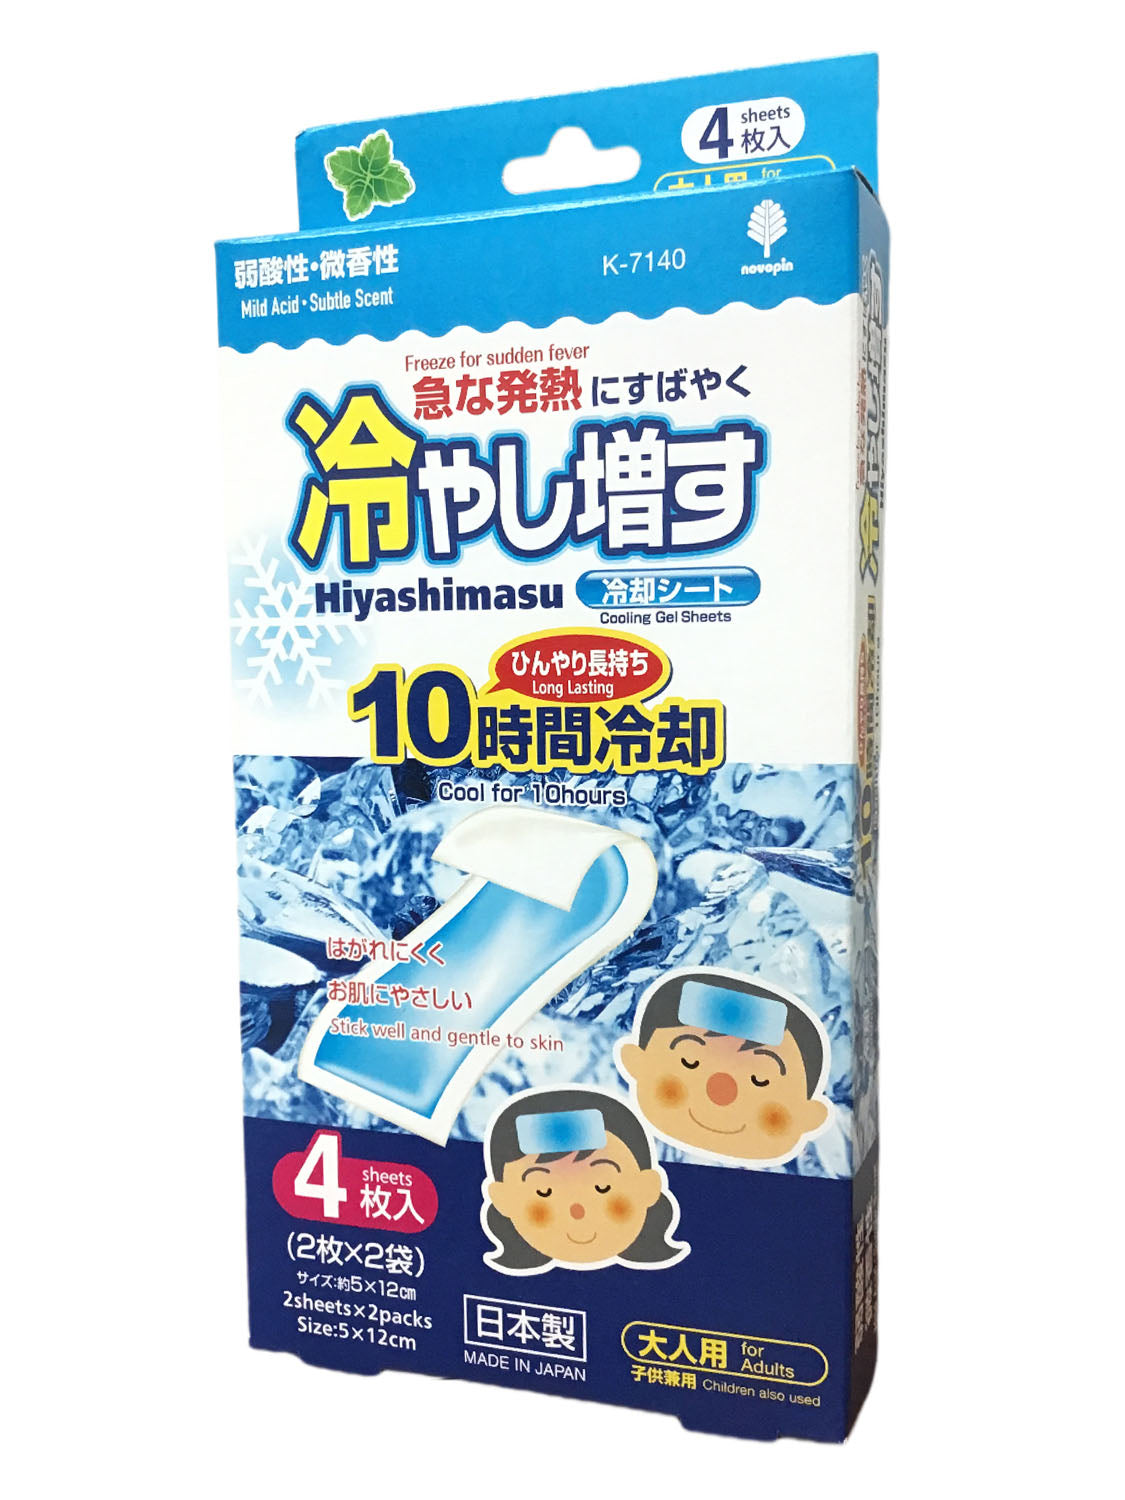 Adult Hiyashimasu Mild Acid·Subtle Scent Cooling Gel Sheets for 10 Hours 冷却贴片 弱酸性·微香性